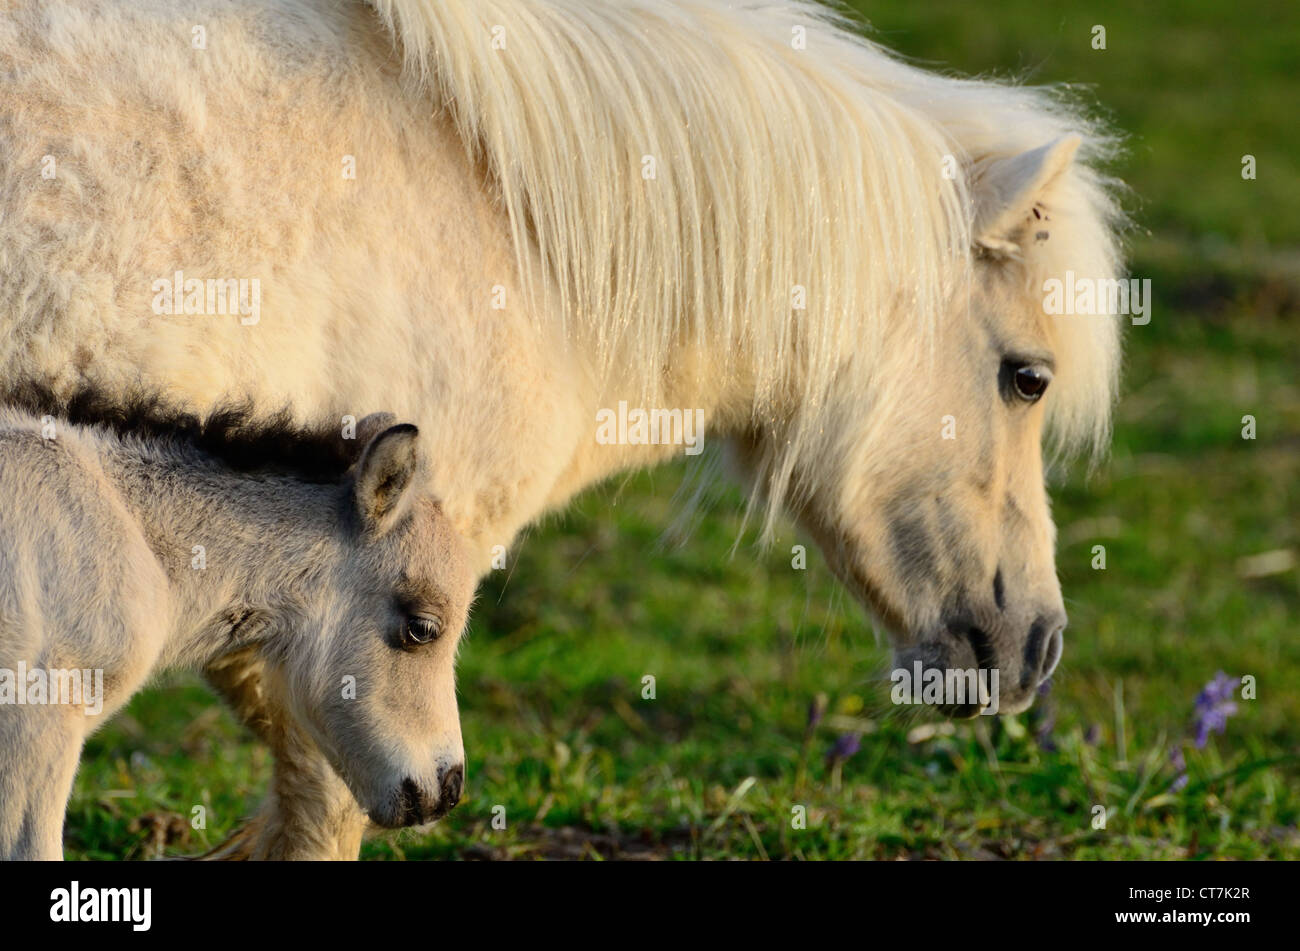 Shetland Pony foal walking beside it's mother Stock Photo